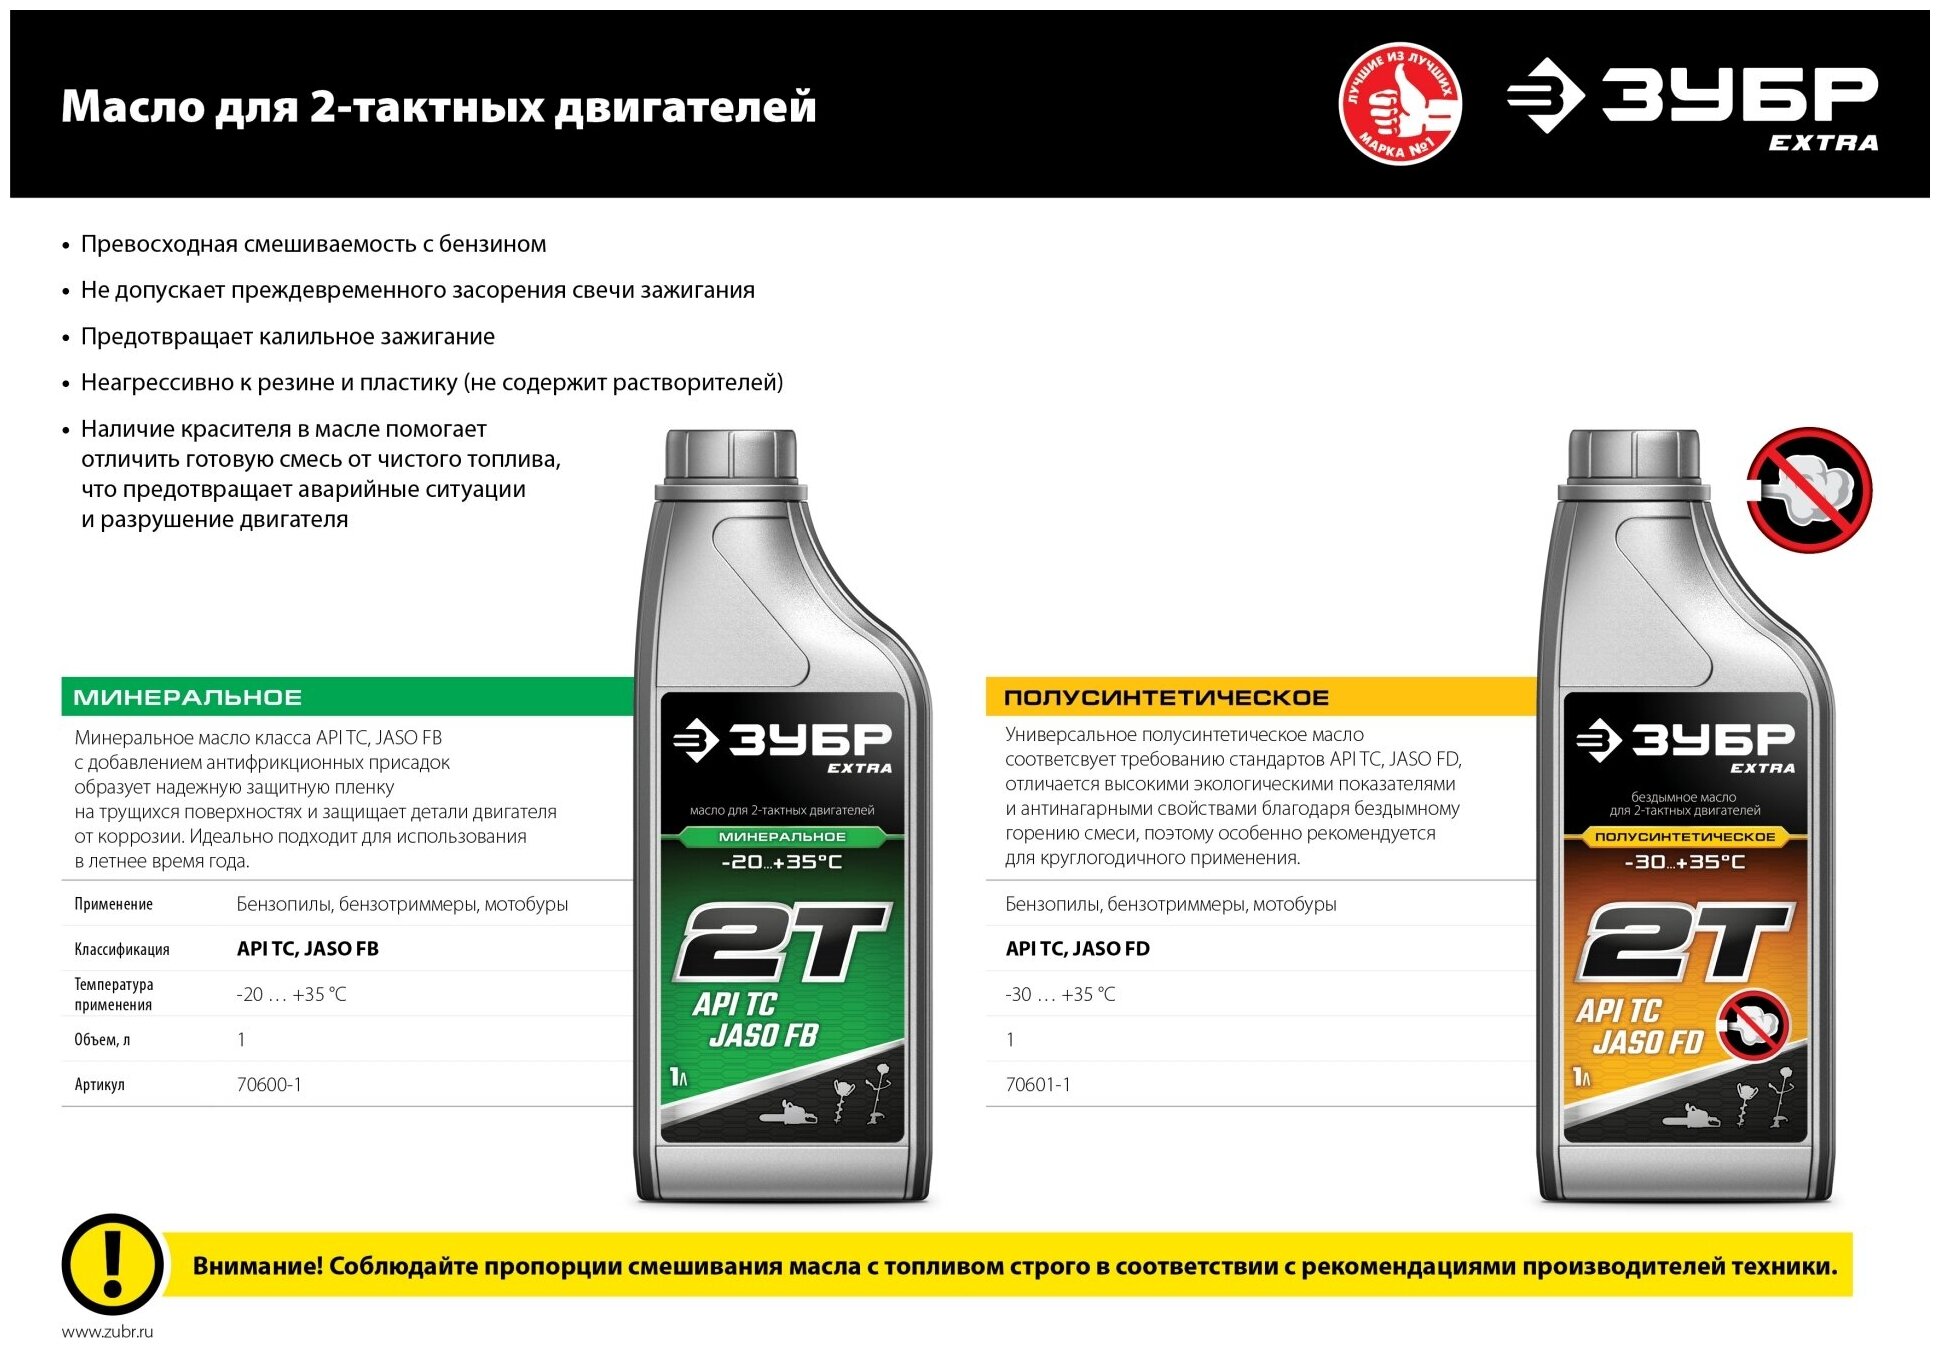 ЗУБР EXTRA 2Т-П полусинтетическое масло для 2-тактных двигателей, 1 л 70601-1